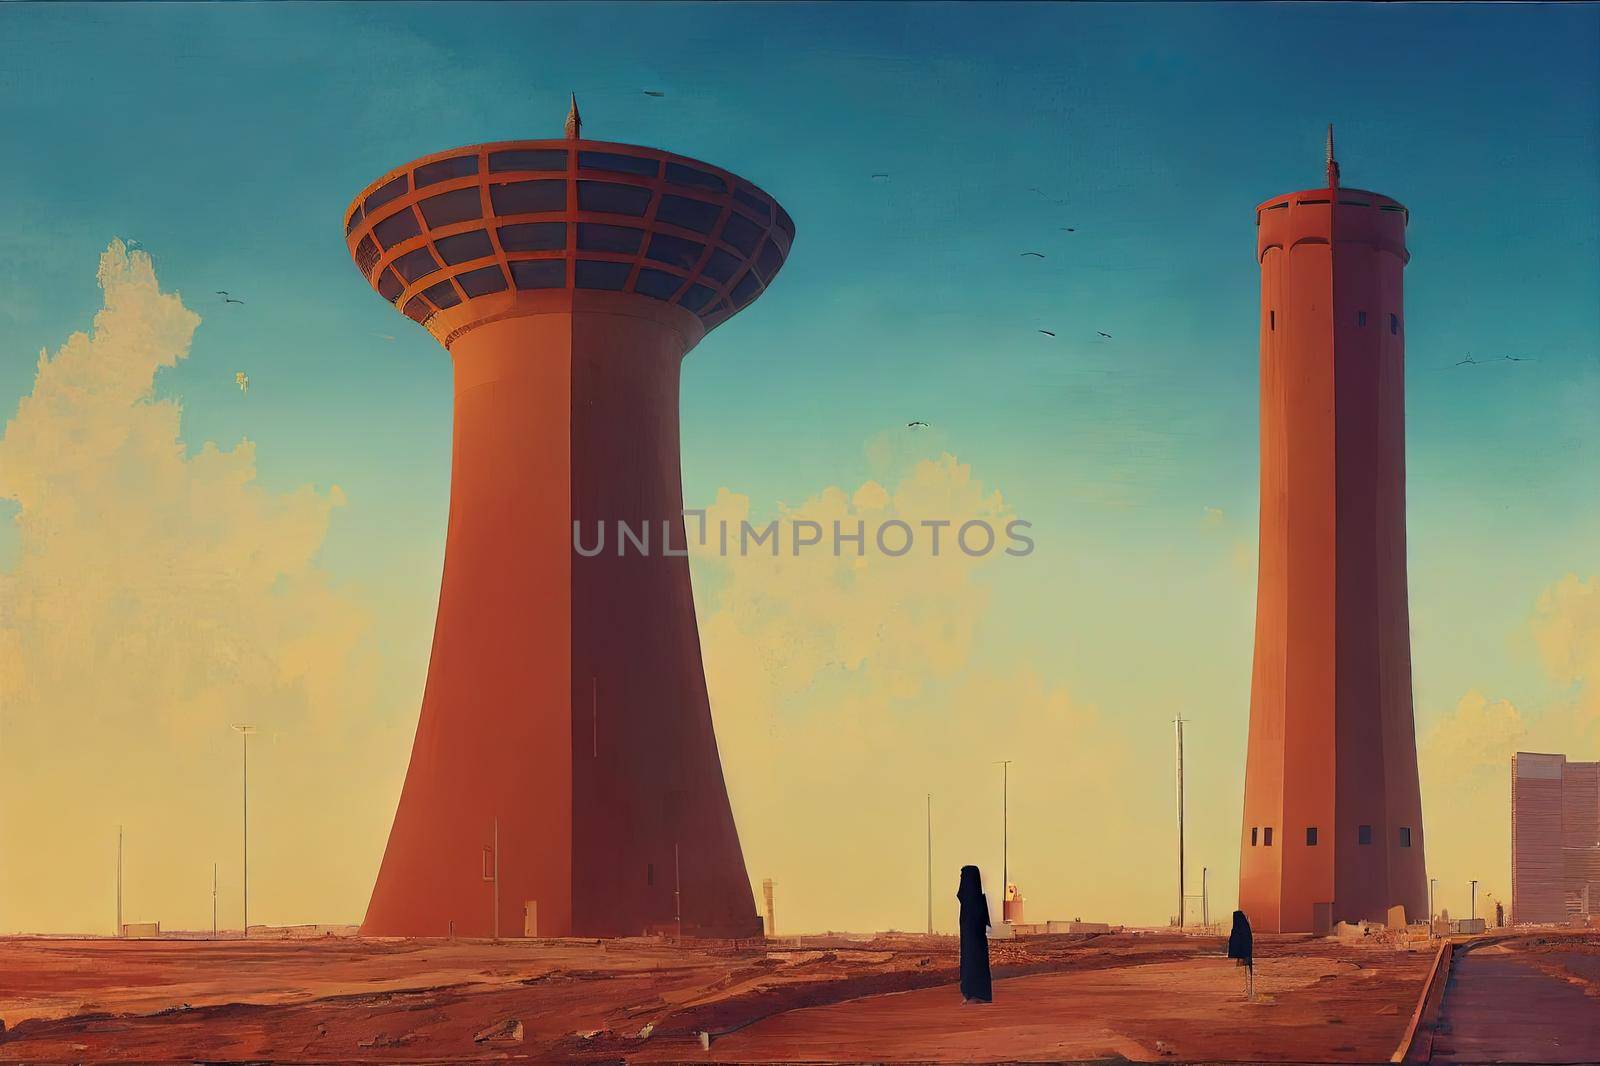 Al khobar Saudi Arabia Jan 6, 2021 The water tower in Khobar, located in the east of the Kingdom of Saudi Arabia, on the Arabian Gulf